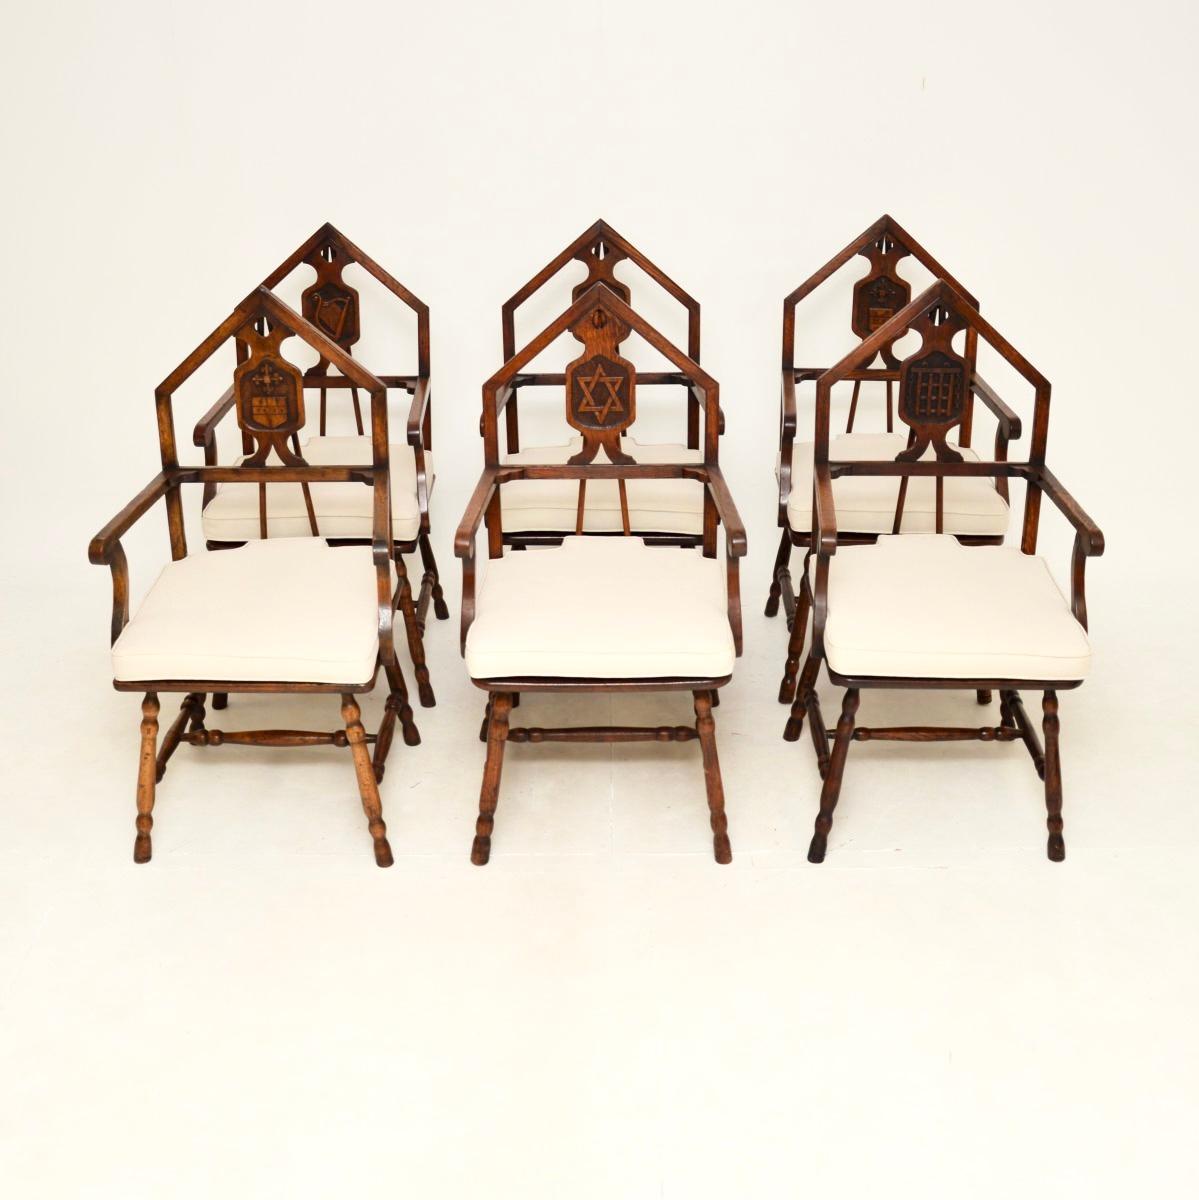 Un superbe ensemble de six chaises de salle à manger maçonniques en chêne de l'époque victorienne. Ils ont été fabriqués en Angleterre et datent d'environ 1880-1900.

Ils sont d'une superbe qualité et ont un design extrêmement intéressant. Les